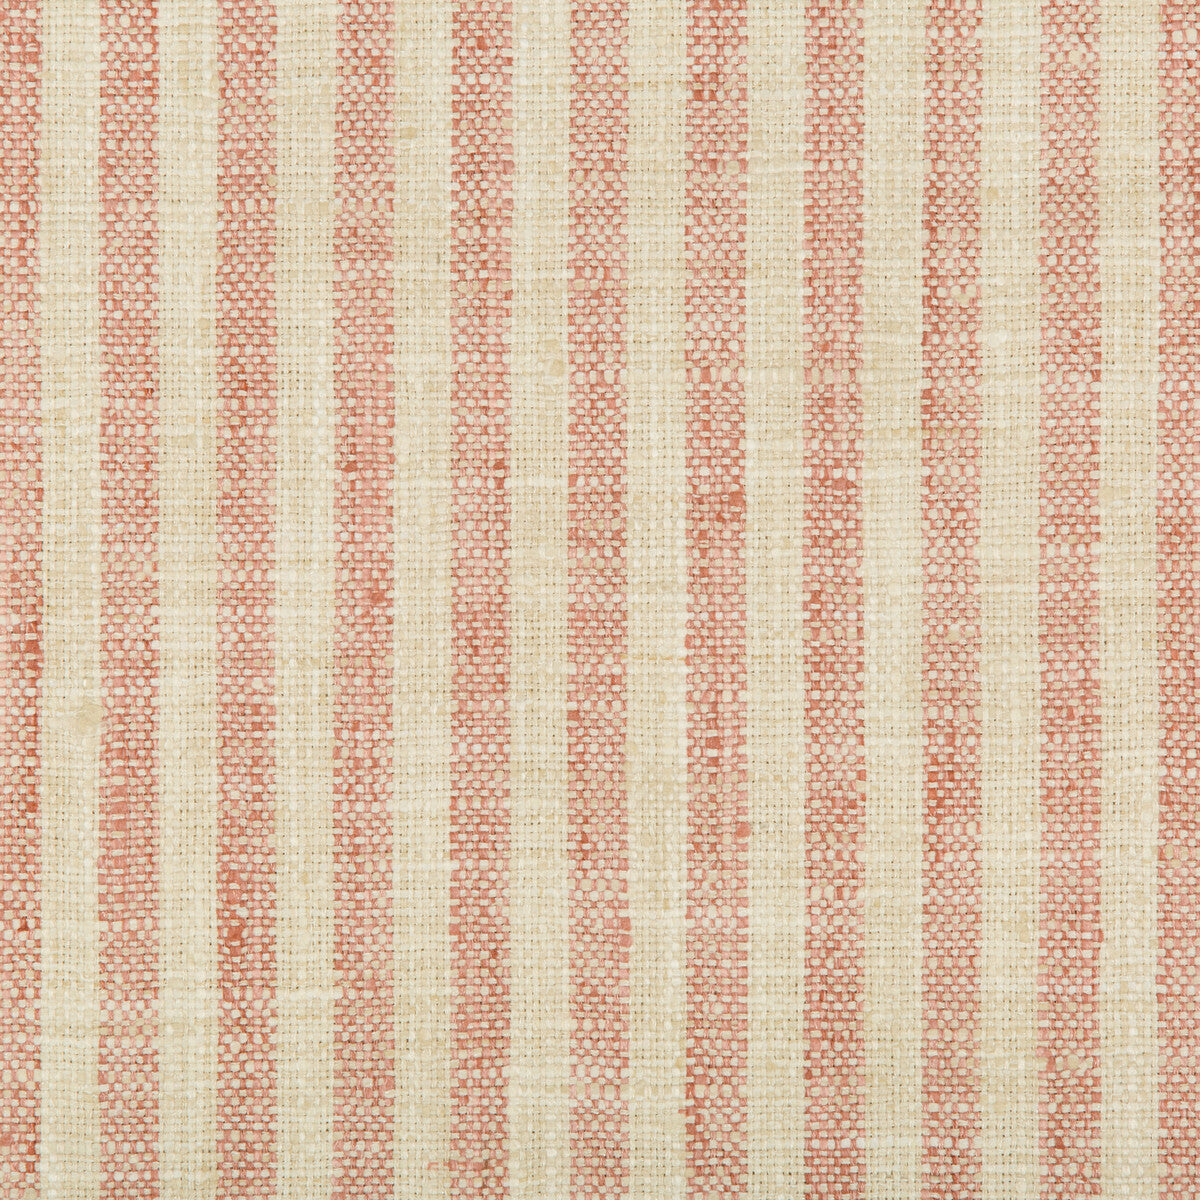 Kravet Basics fabric in 34080-17 color - pattern 34080.17.0 - by Kravet Basics